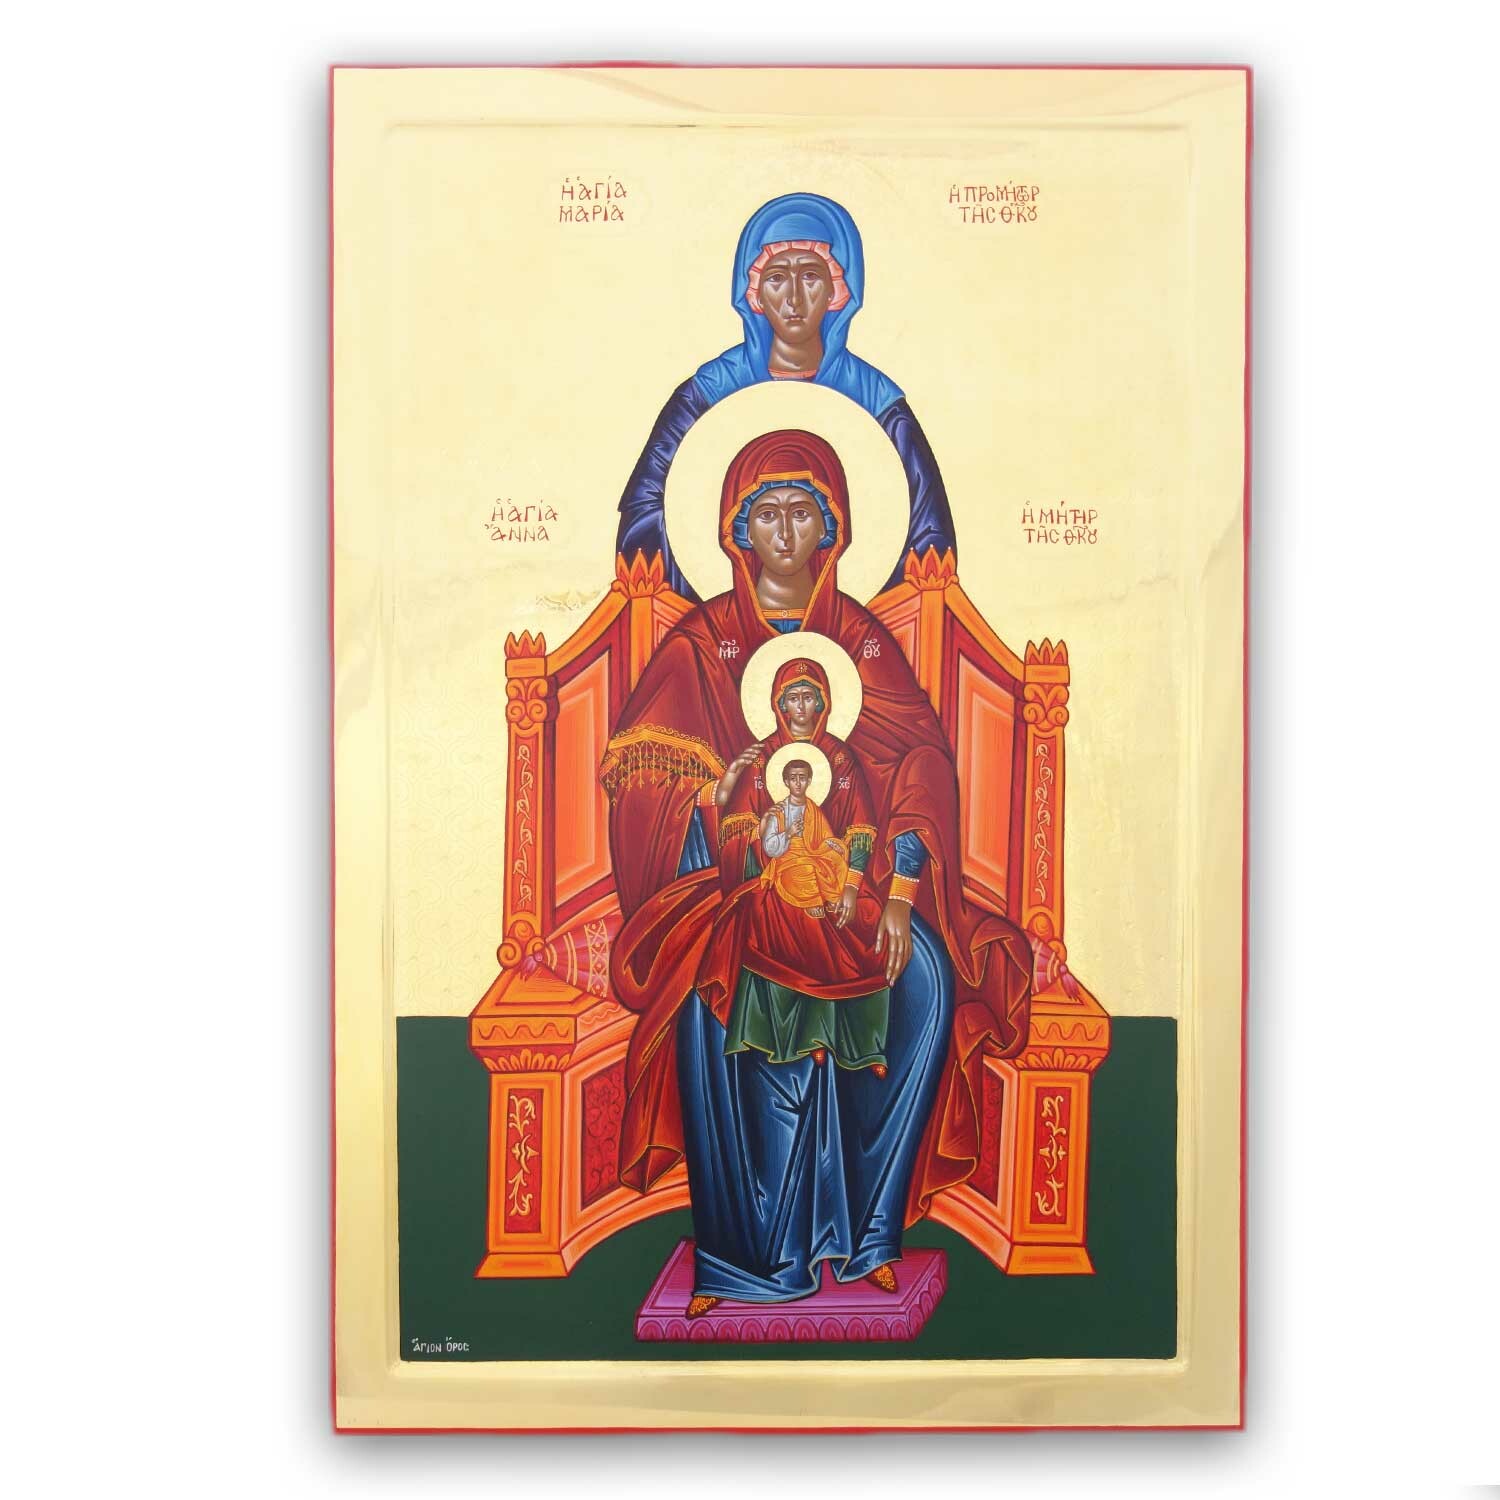 St. Maria Promitor Theotokou